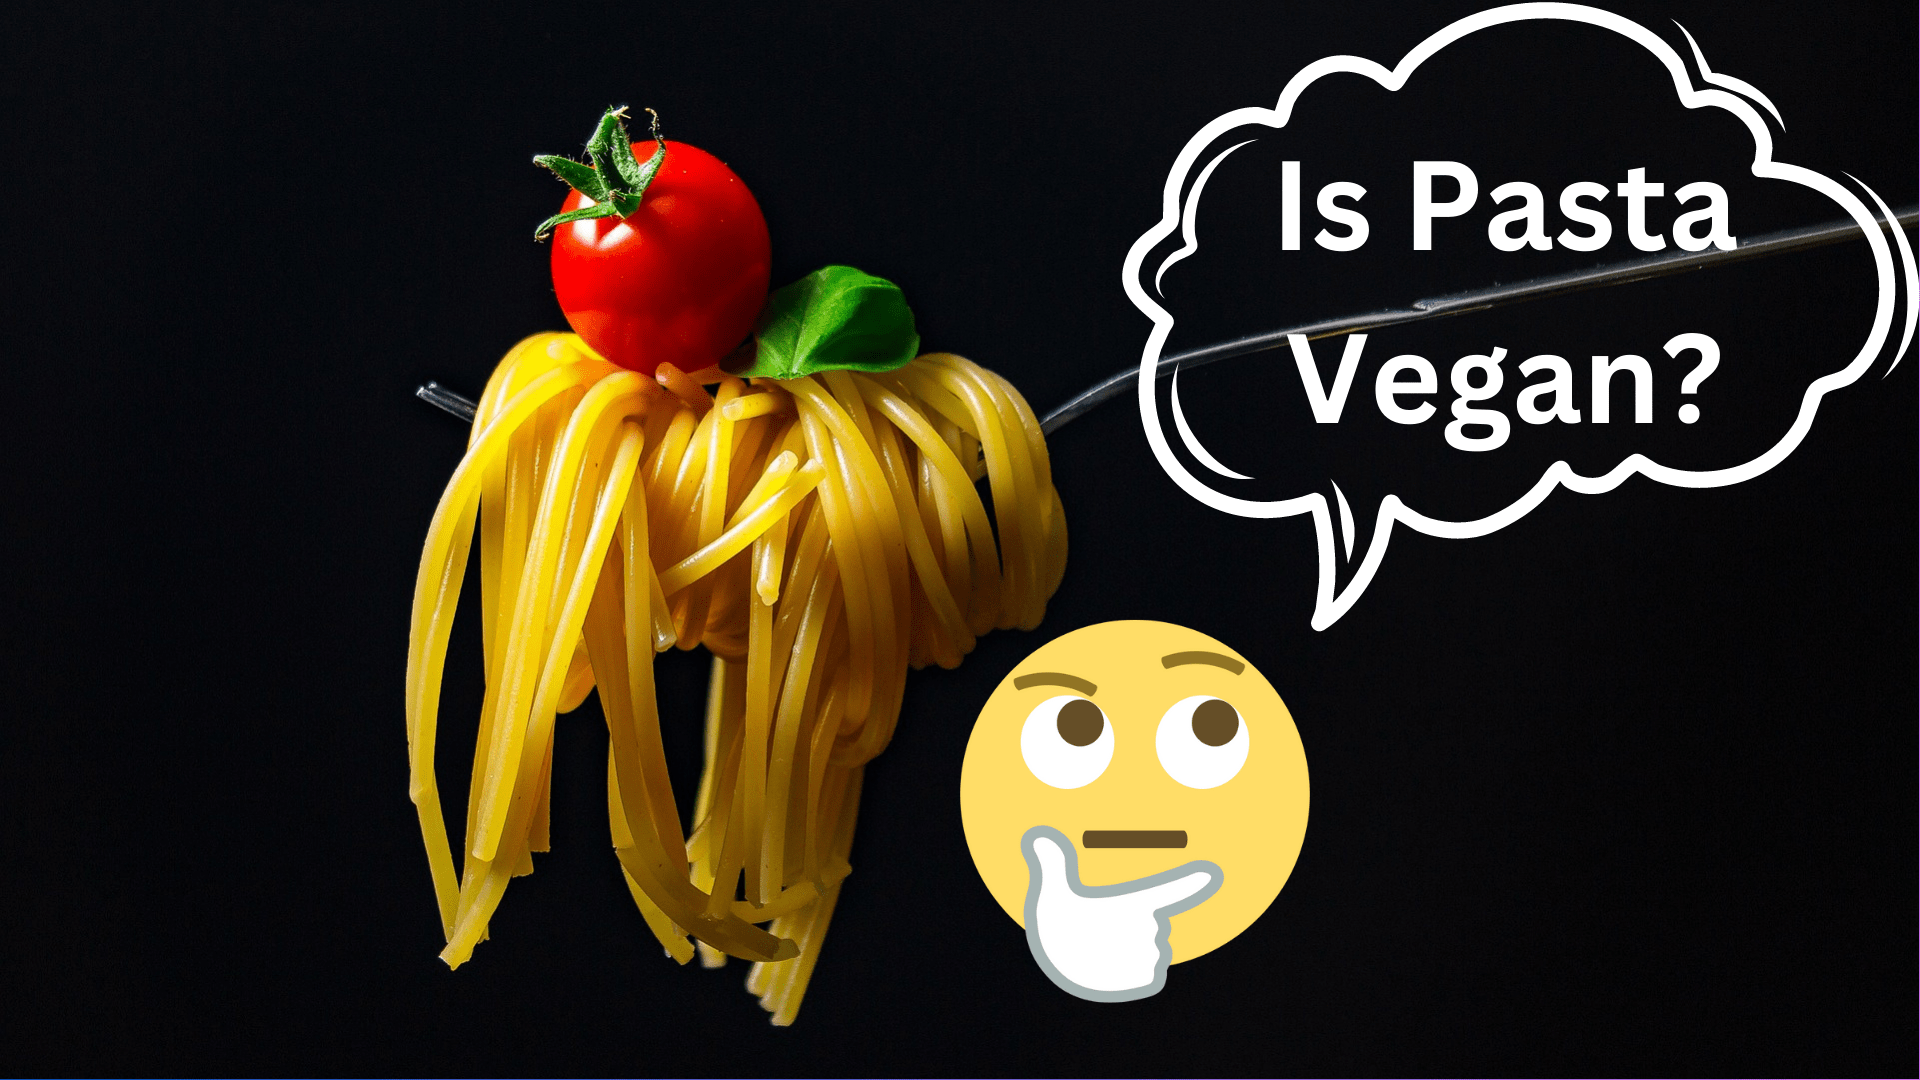 Is pasta vegan?